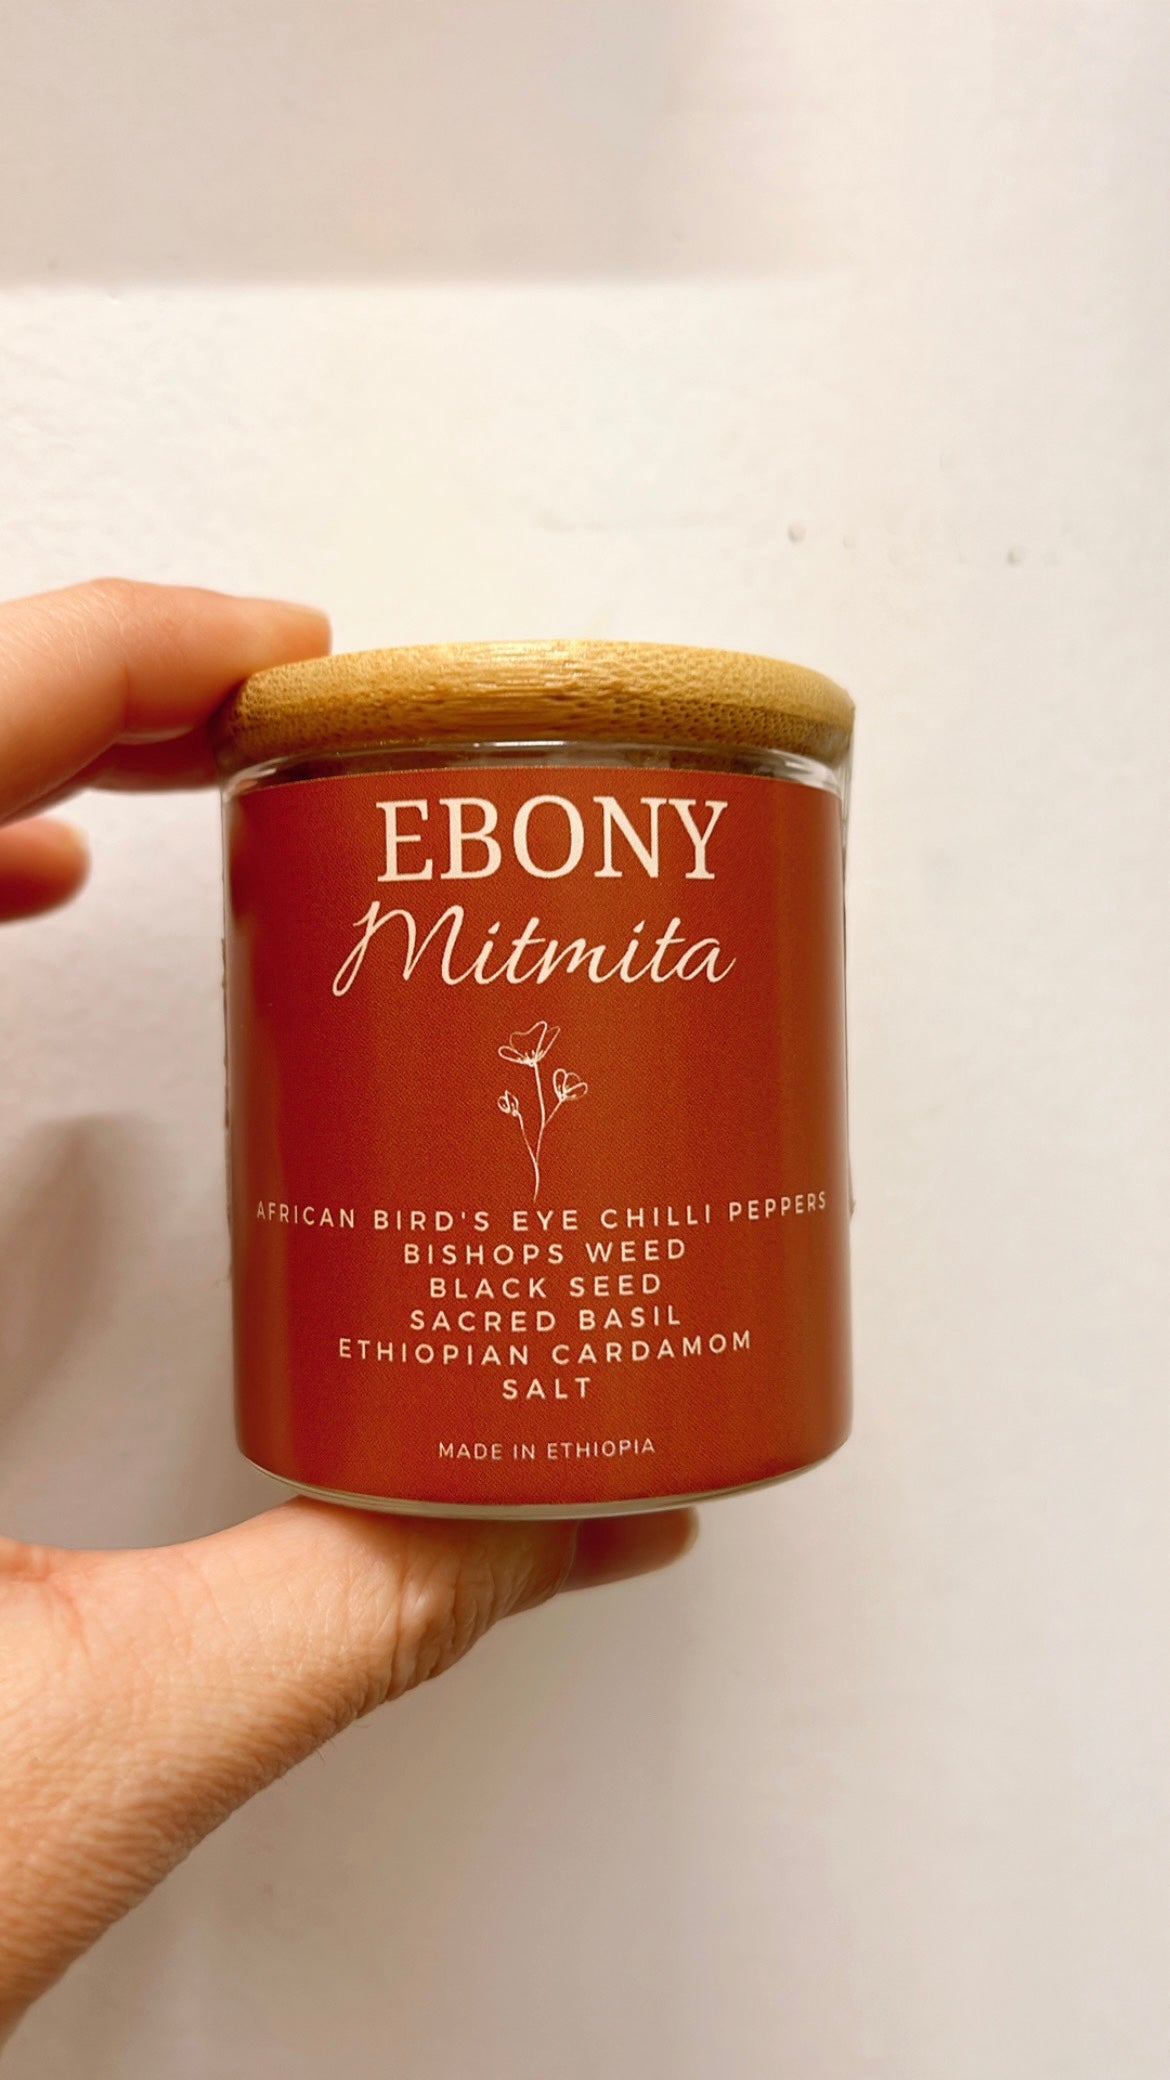 Ebony Mitmita Seasoning